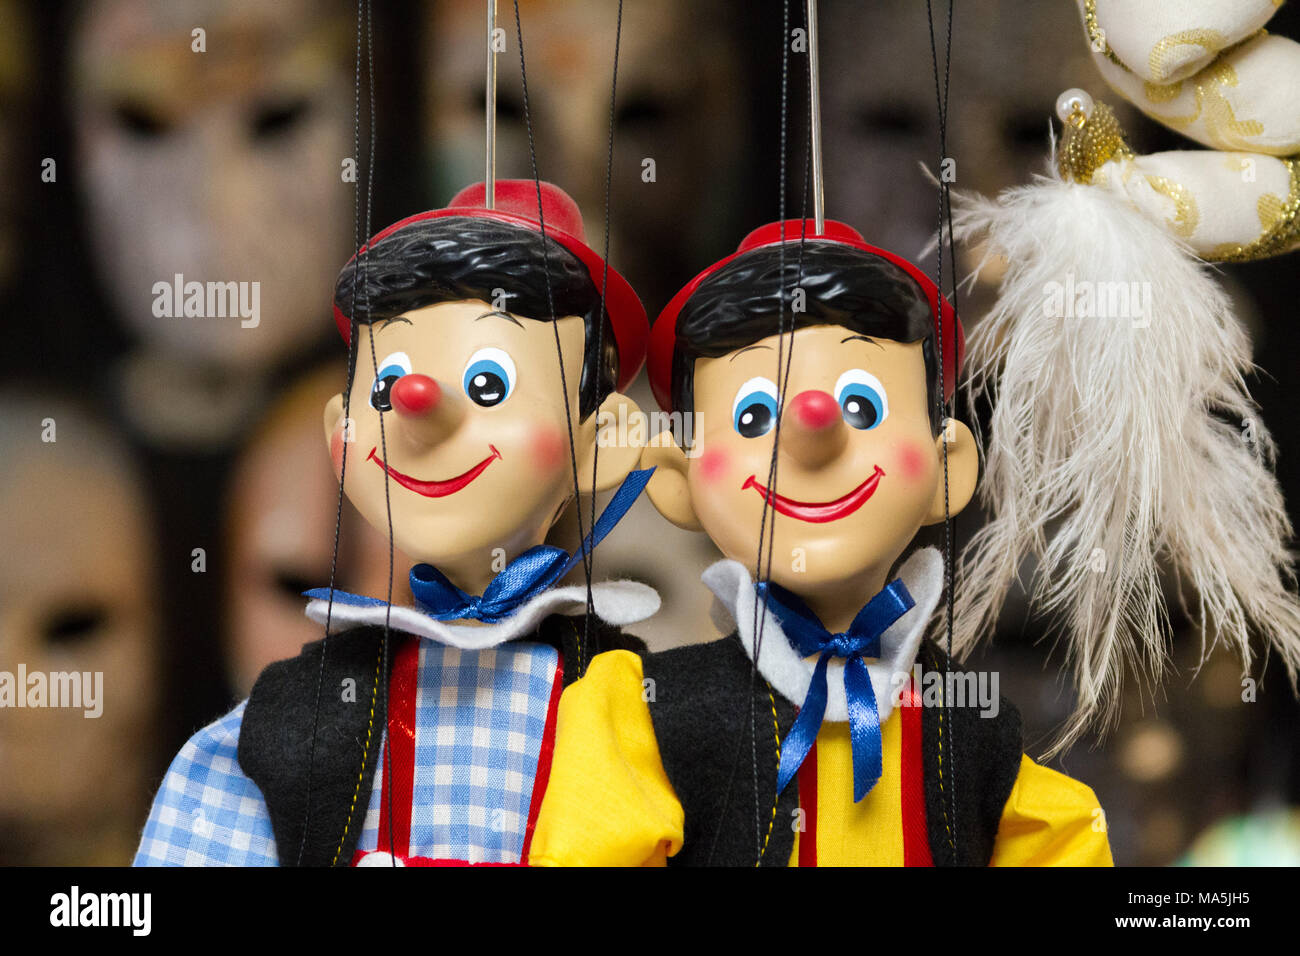 Venezia (Venedig), Italien. 2. Februar 2018. Pinocchio Marionette auf Strings in einem Laden. Stockfoto